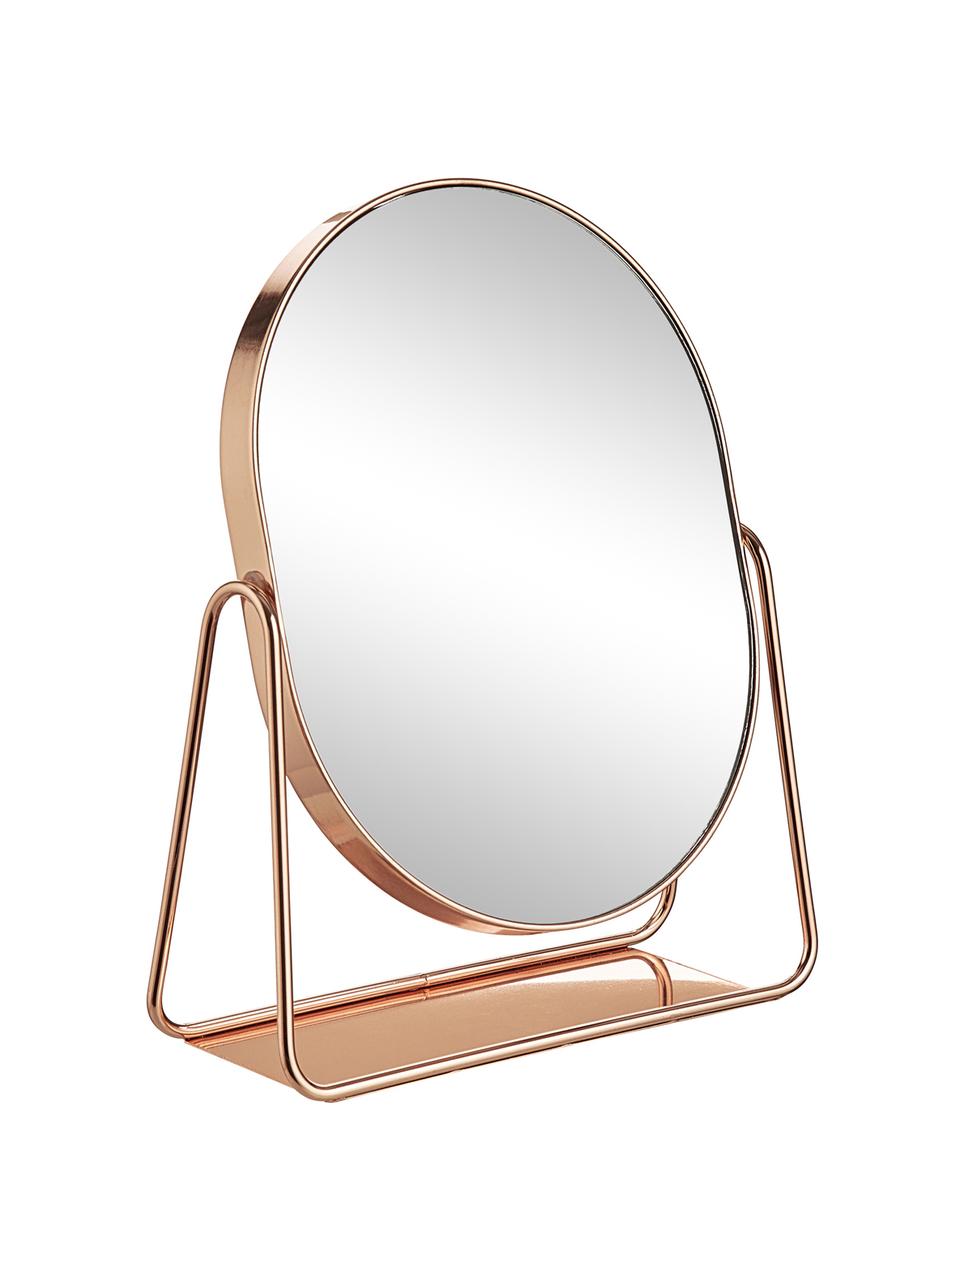 Oválné kosmetické zrcadlo s kovovým rámem Gloria, Růžově zlatá, Š 16 cm, V 22 cm